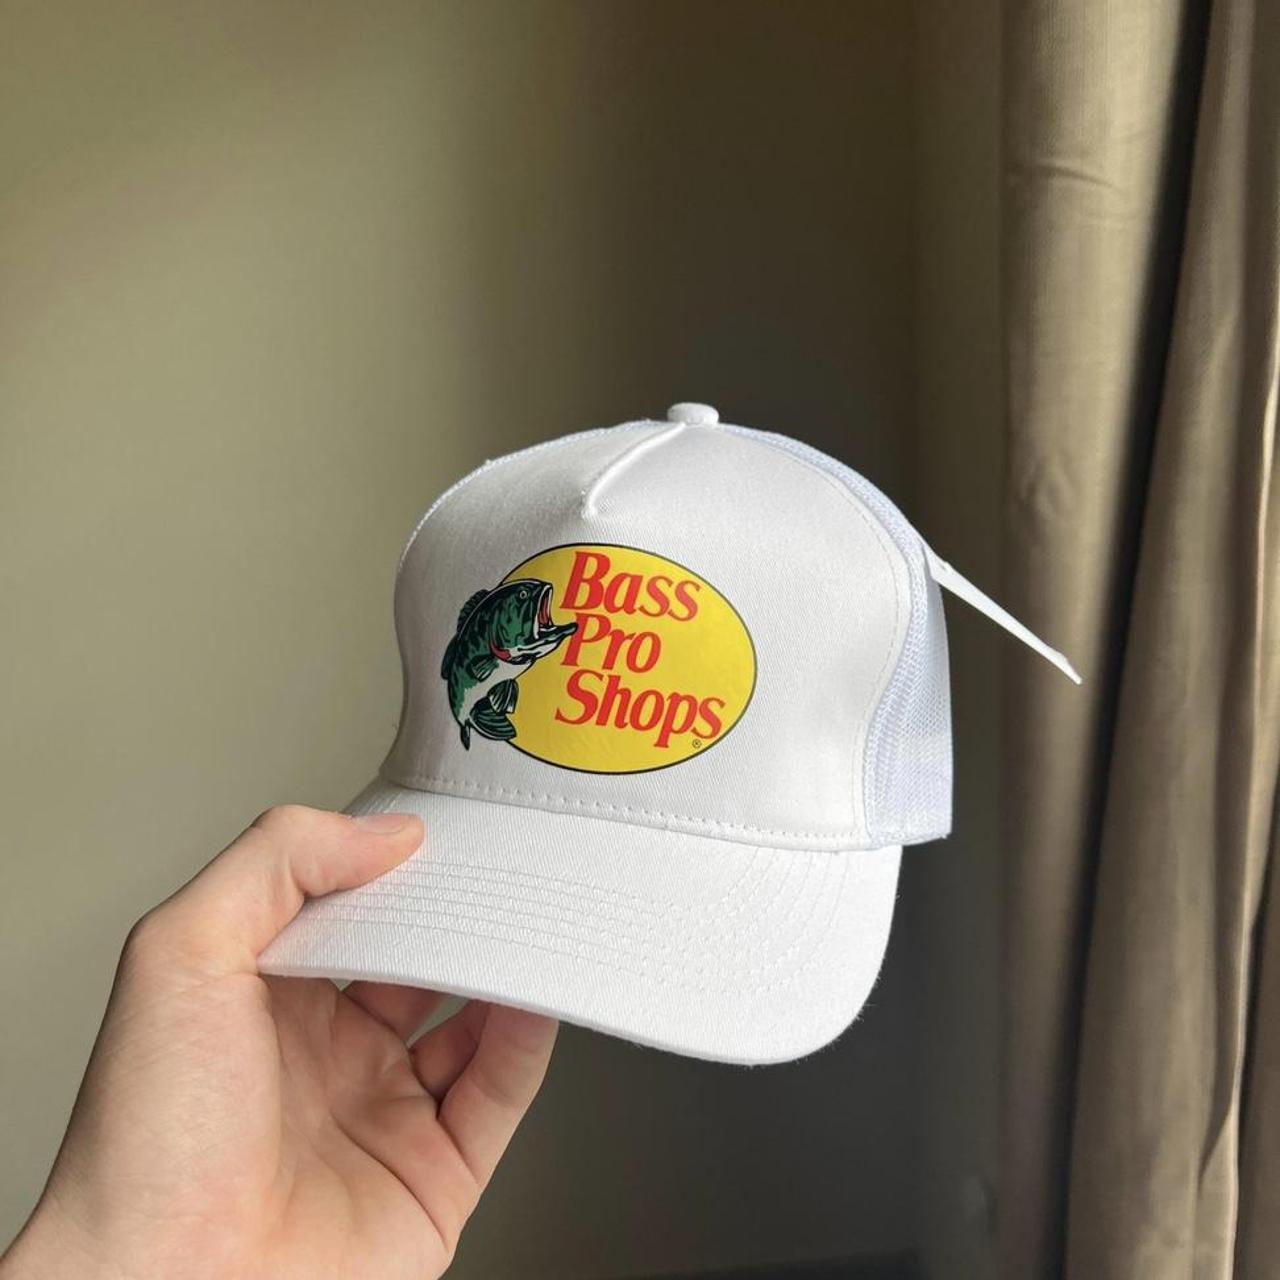 Bass pro shops white trucker hat - Depop